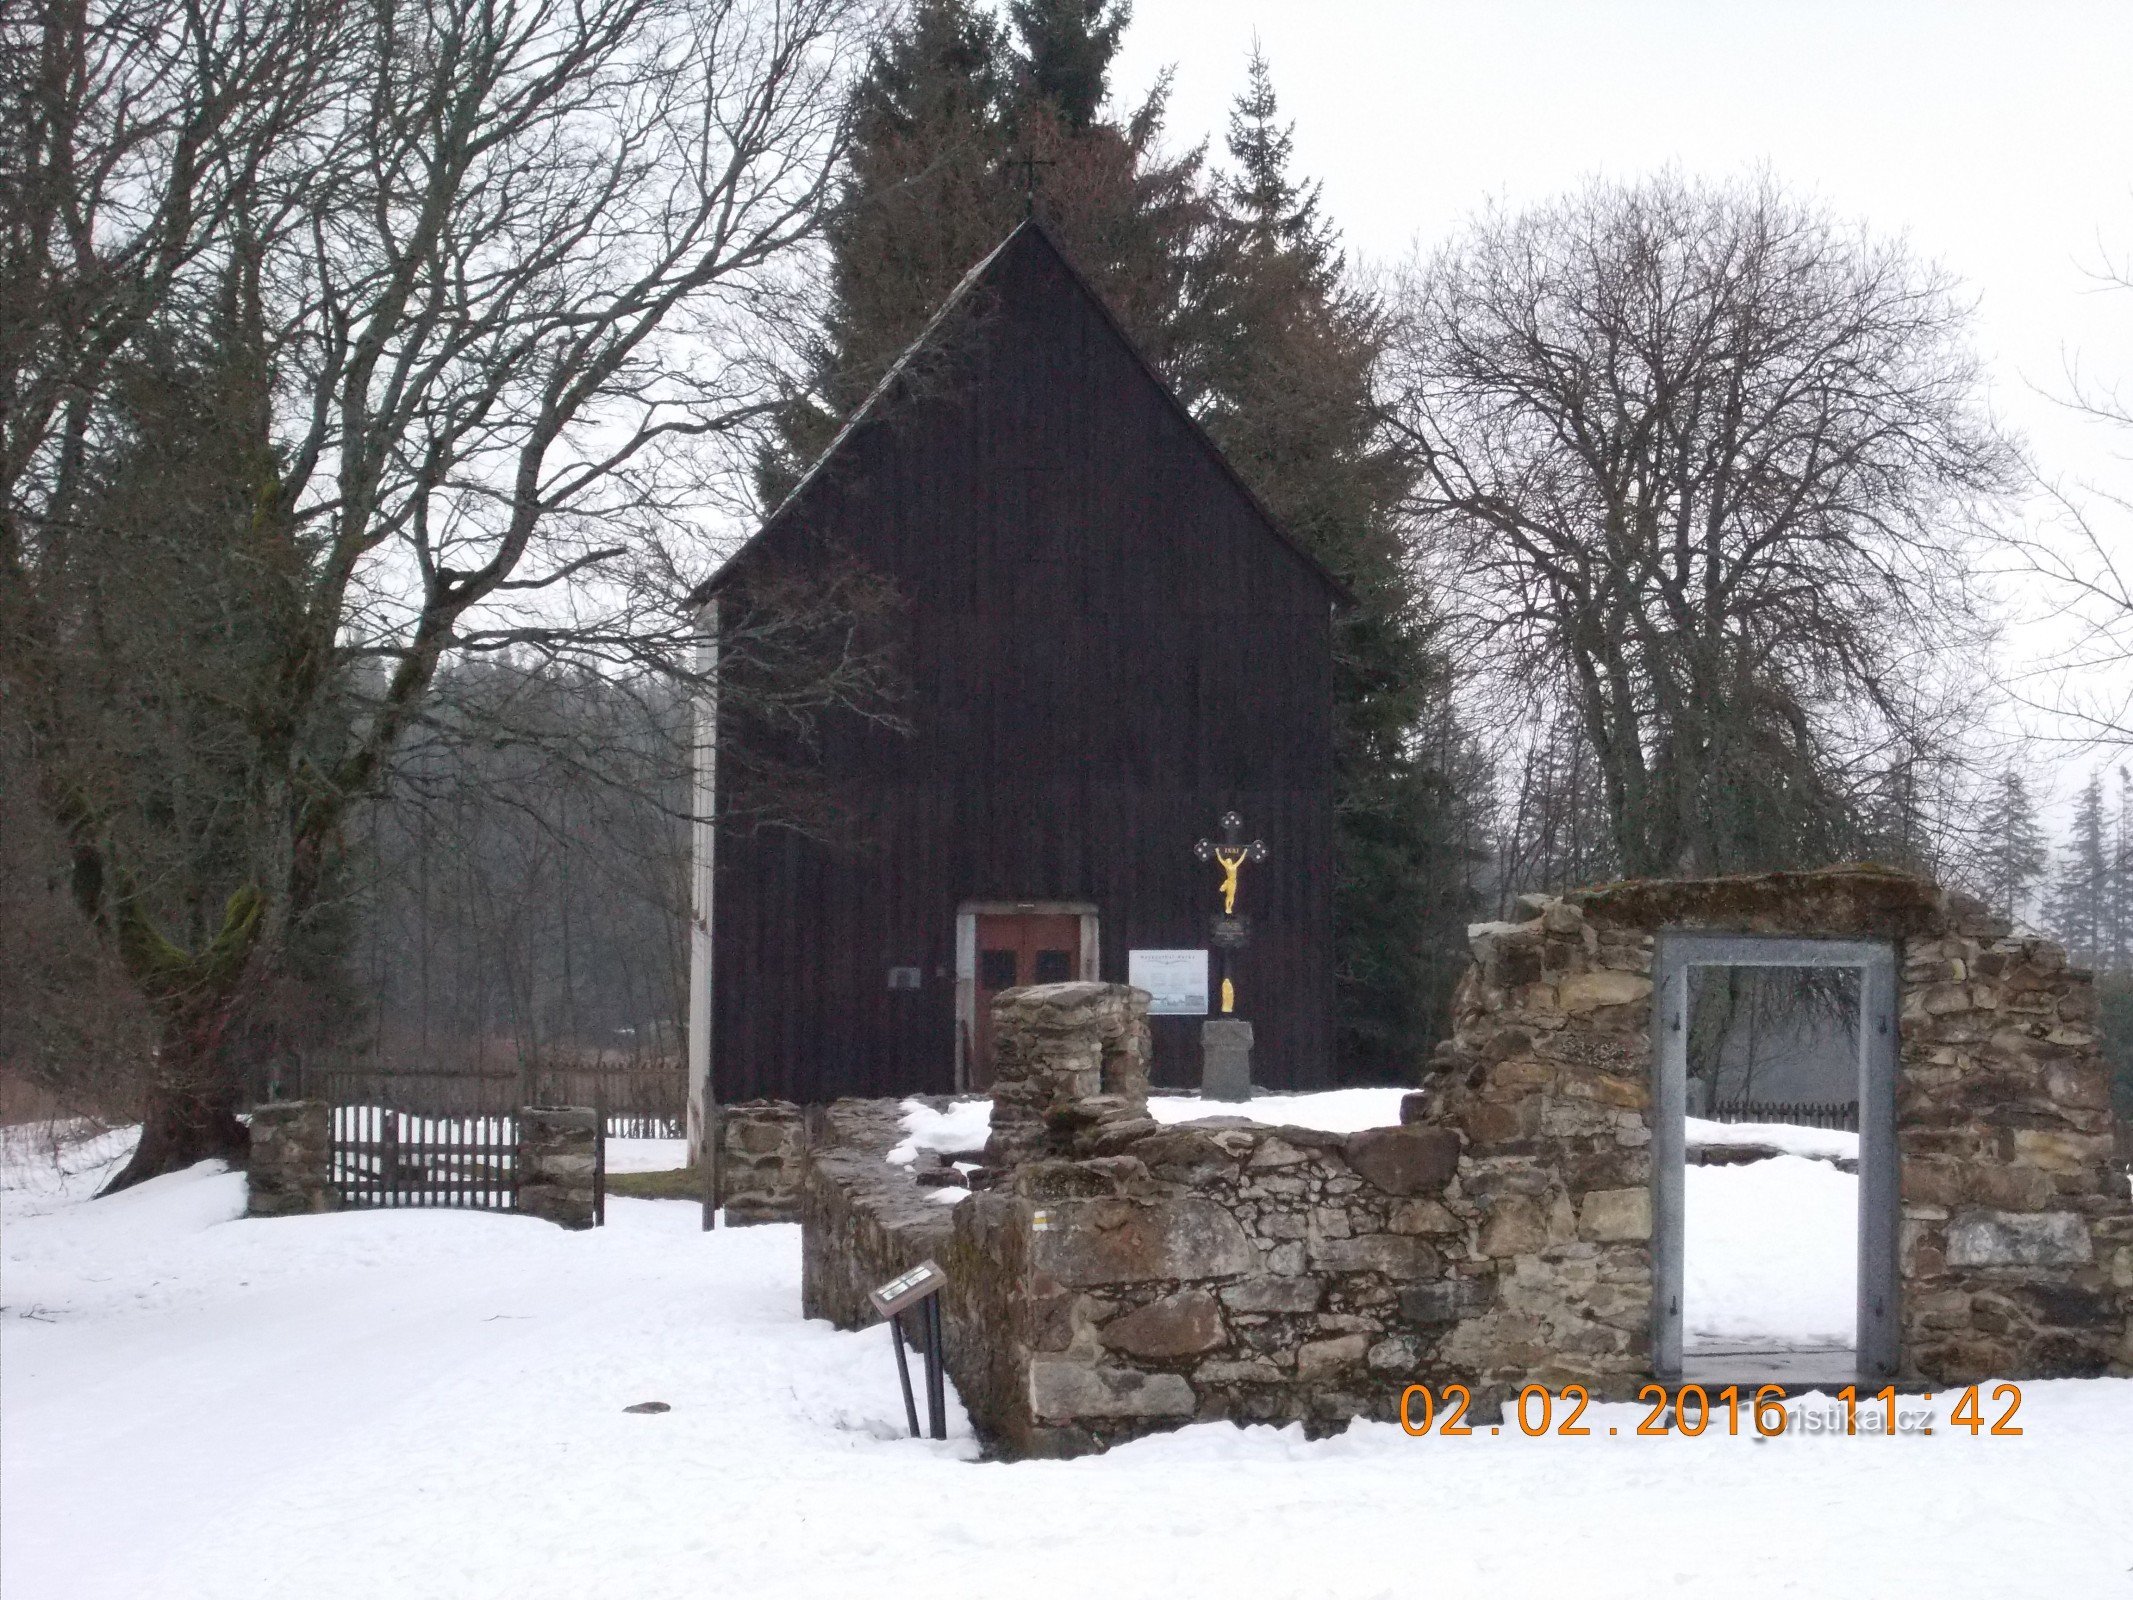 Pyhän hautausmaan kappeli Ristit Hůrkan kylässä